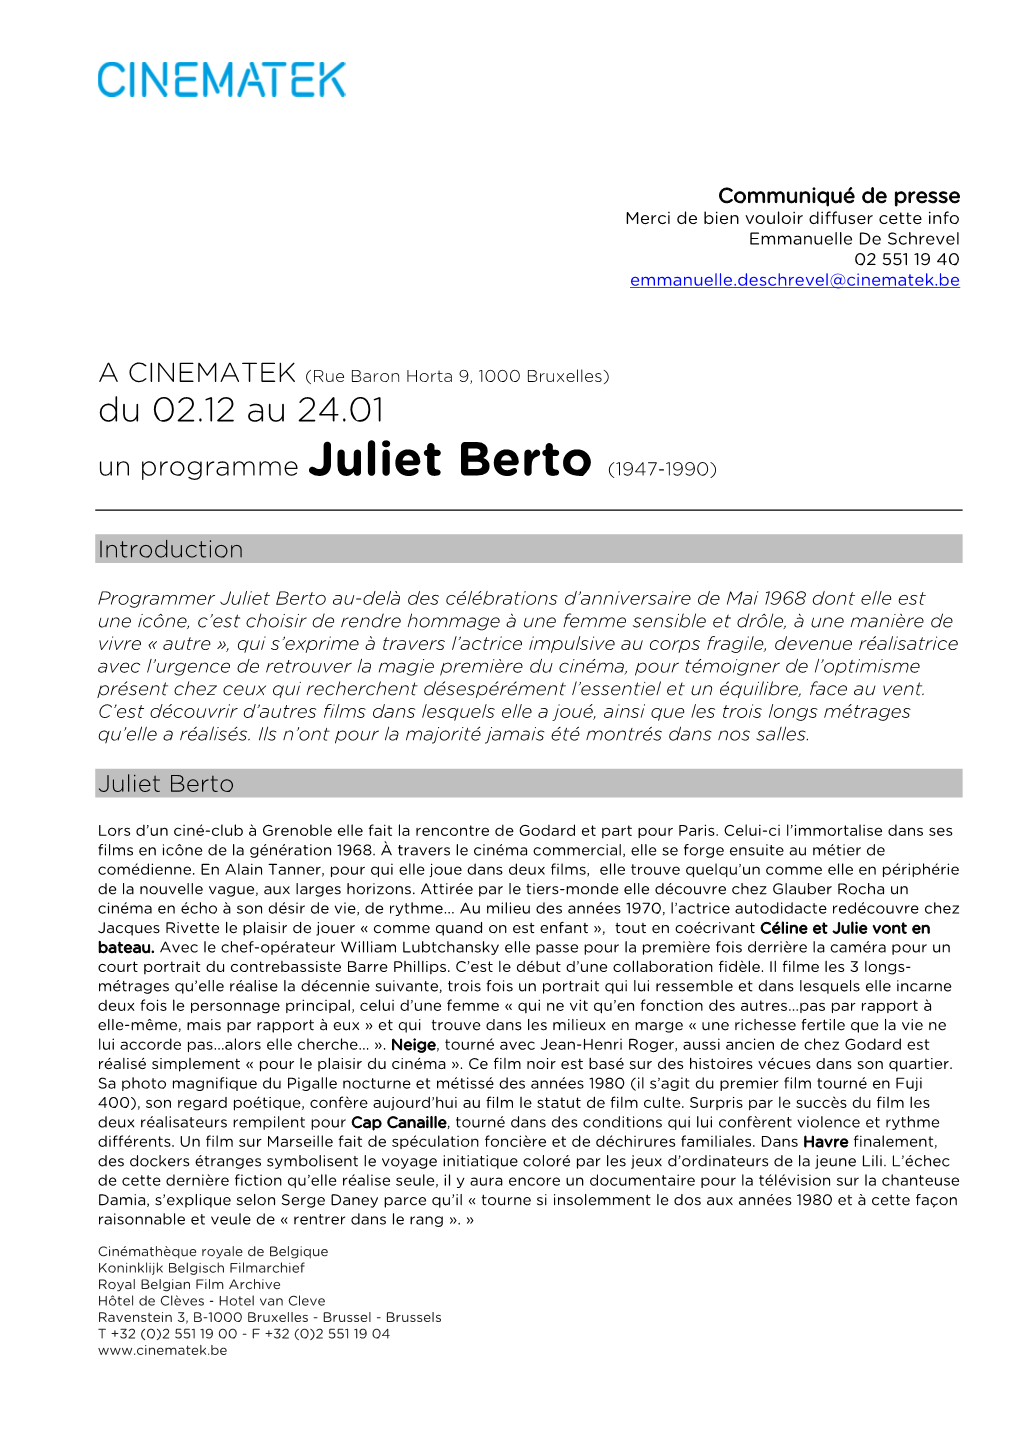 Juliet Berto (1947-1990)